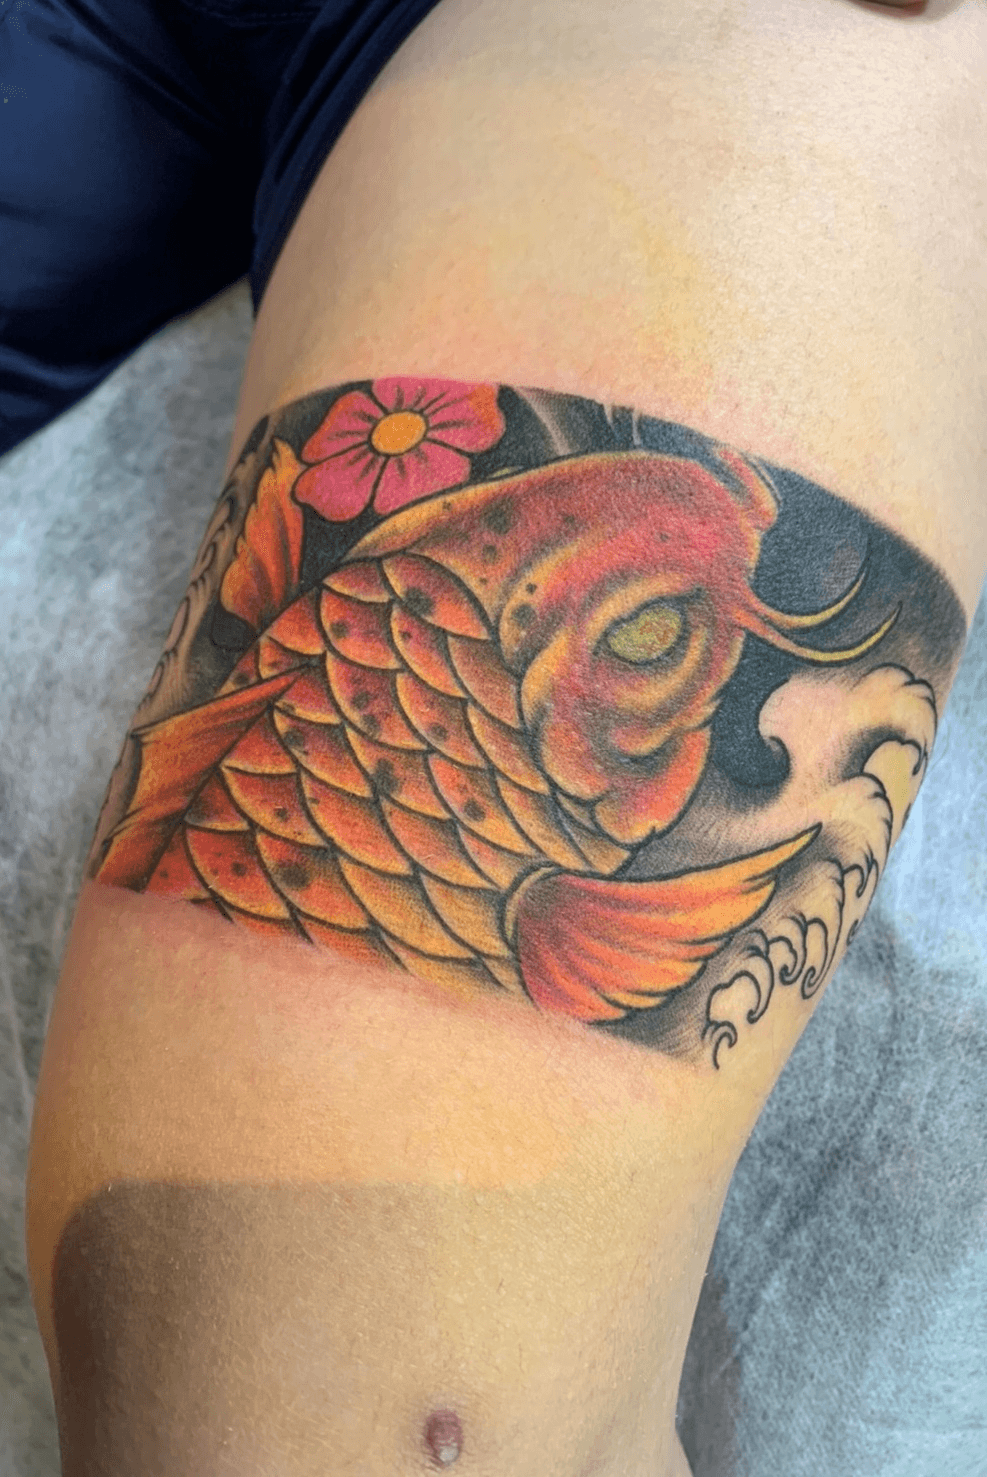 Qubiduu on Instagram Koi with lotus flower armband    tattoo tattoos  tattooart tattooaddict tattoolife tattoolove tattoolovers  tattooideas